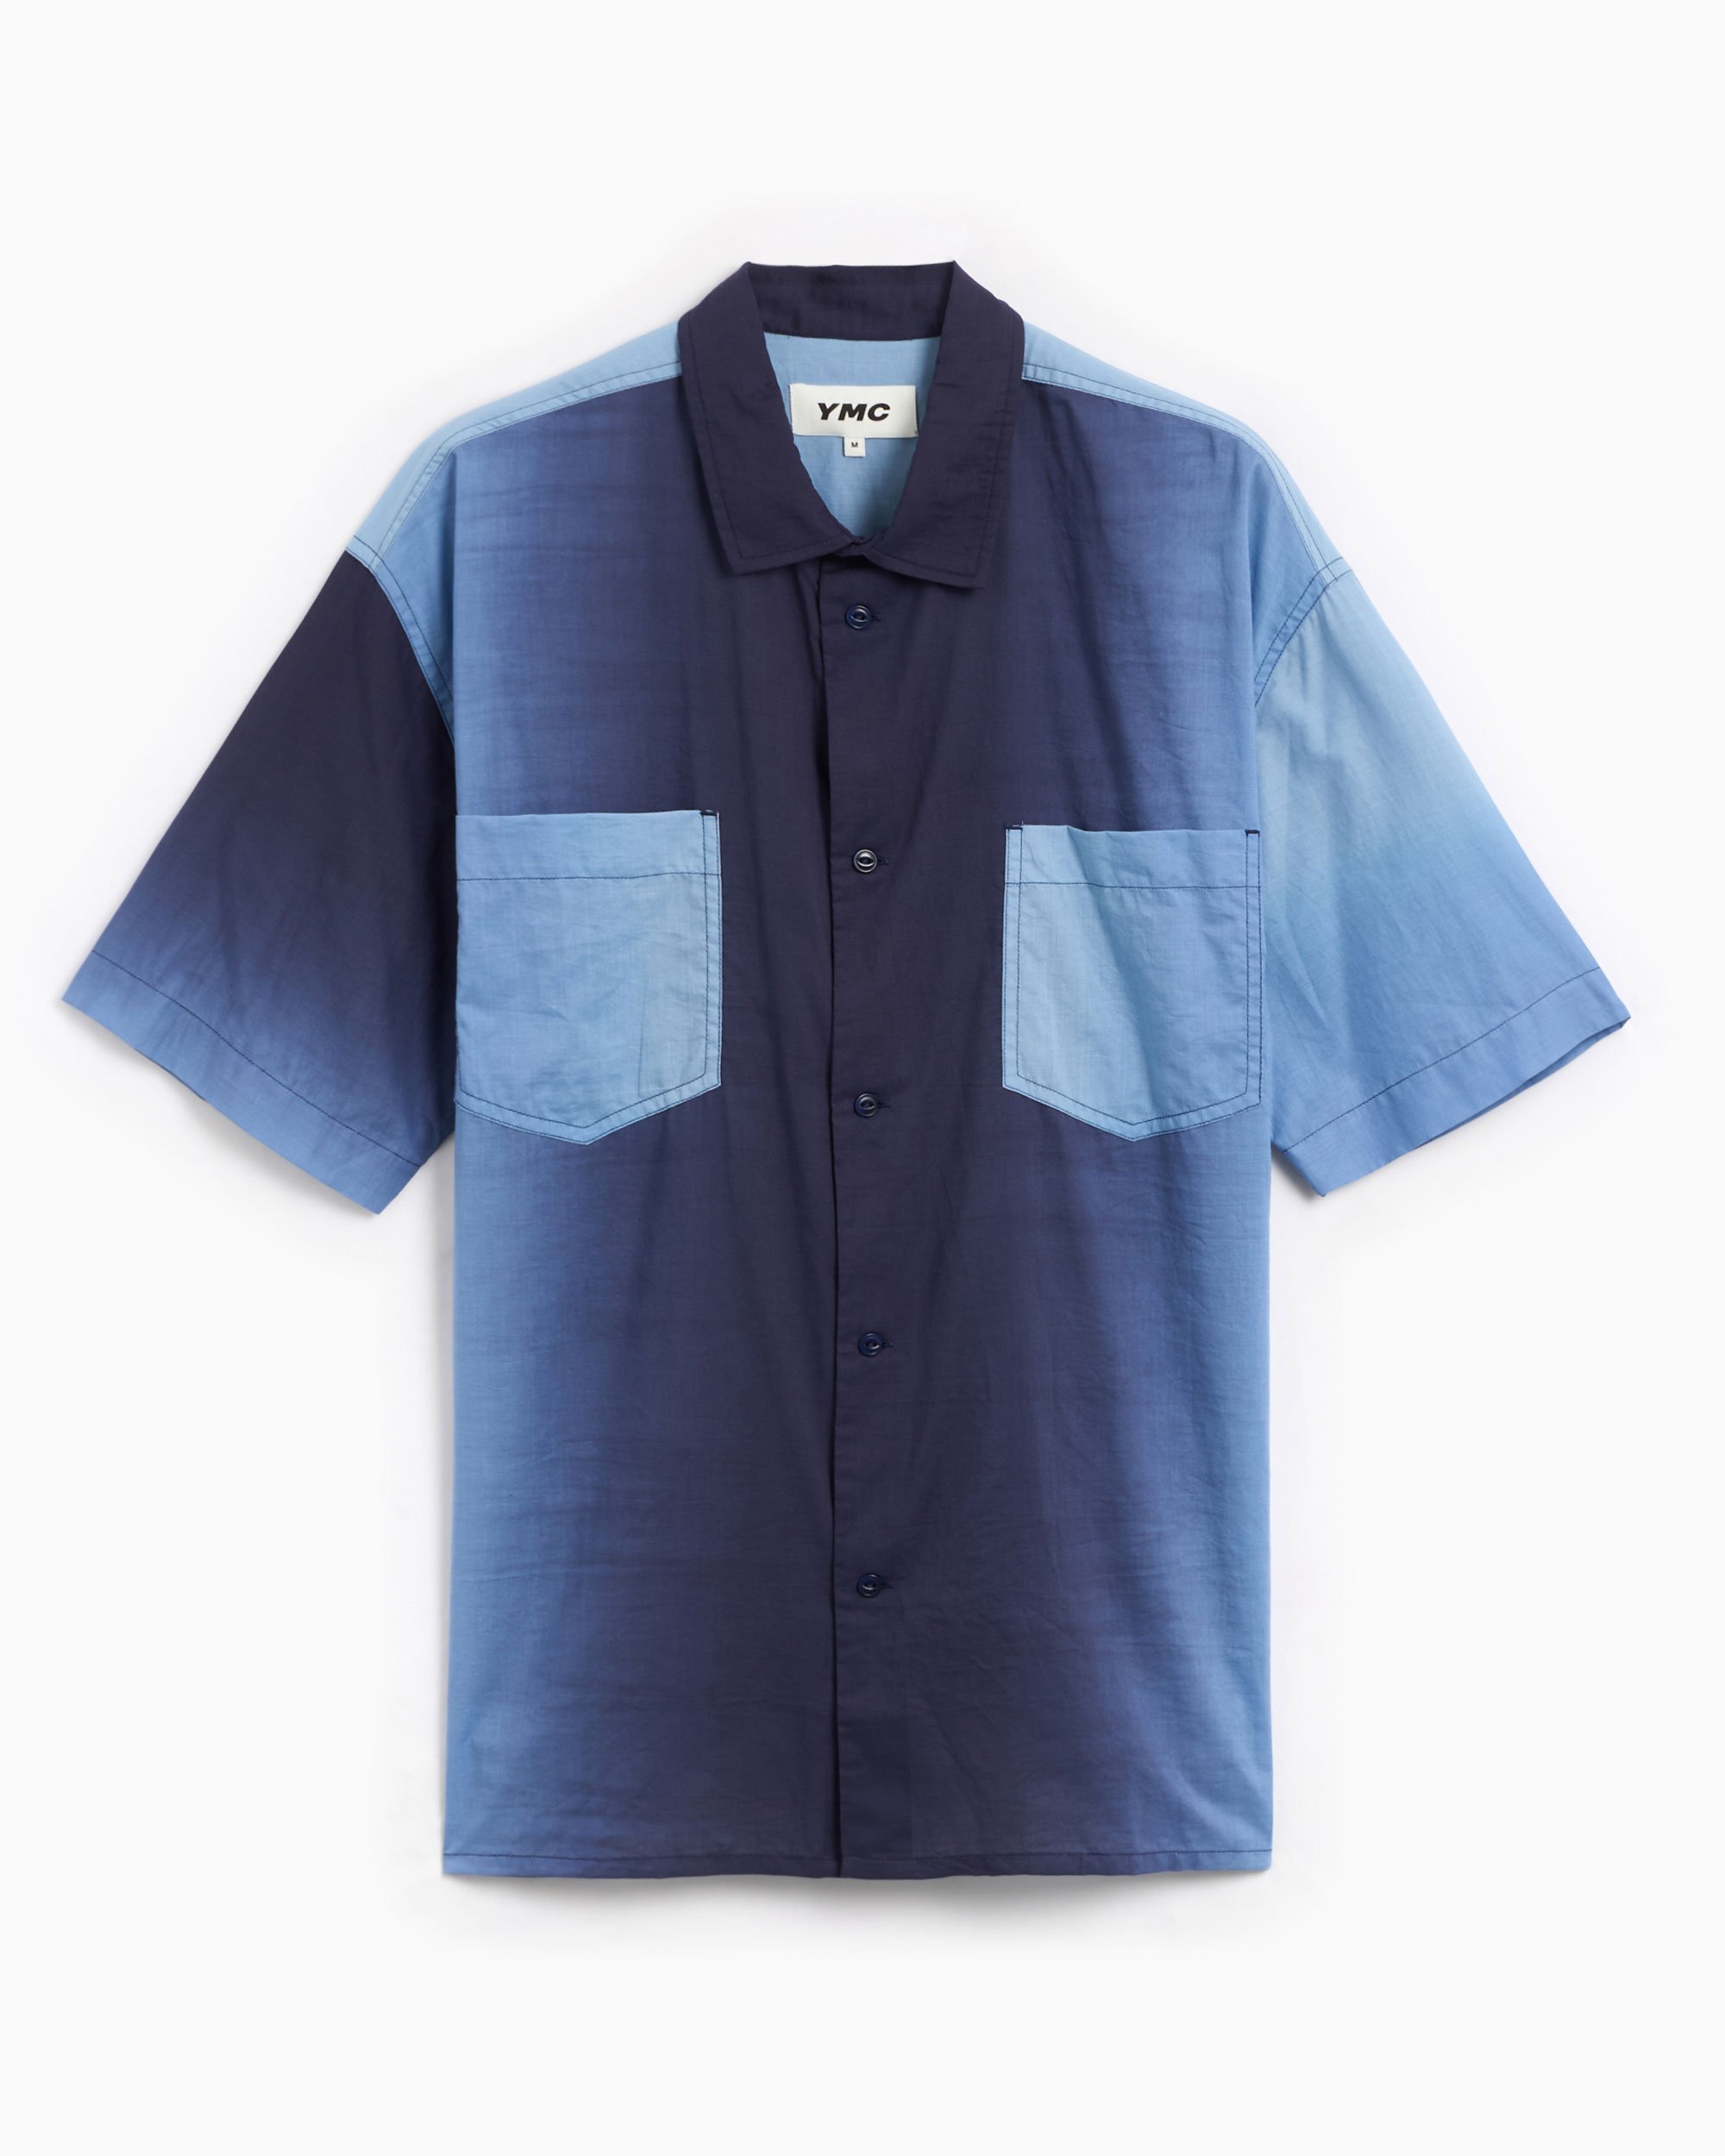 YMC Mitchum Men's Short Sleeve Shirt Blue P2WAX-BLUE| FOOTDISTRICT